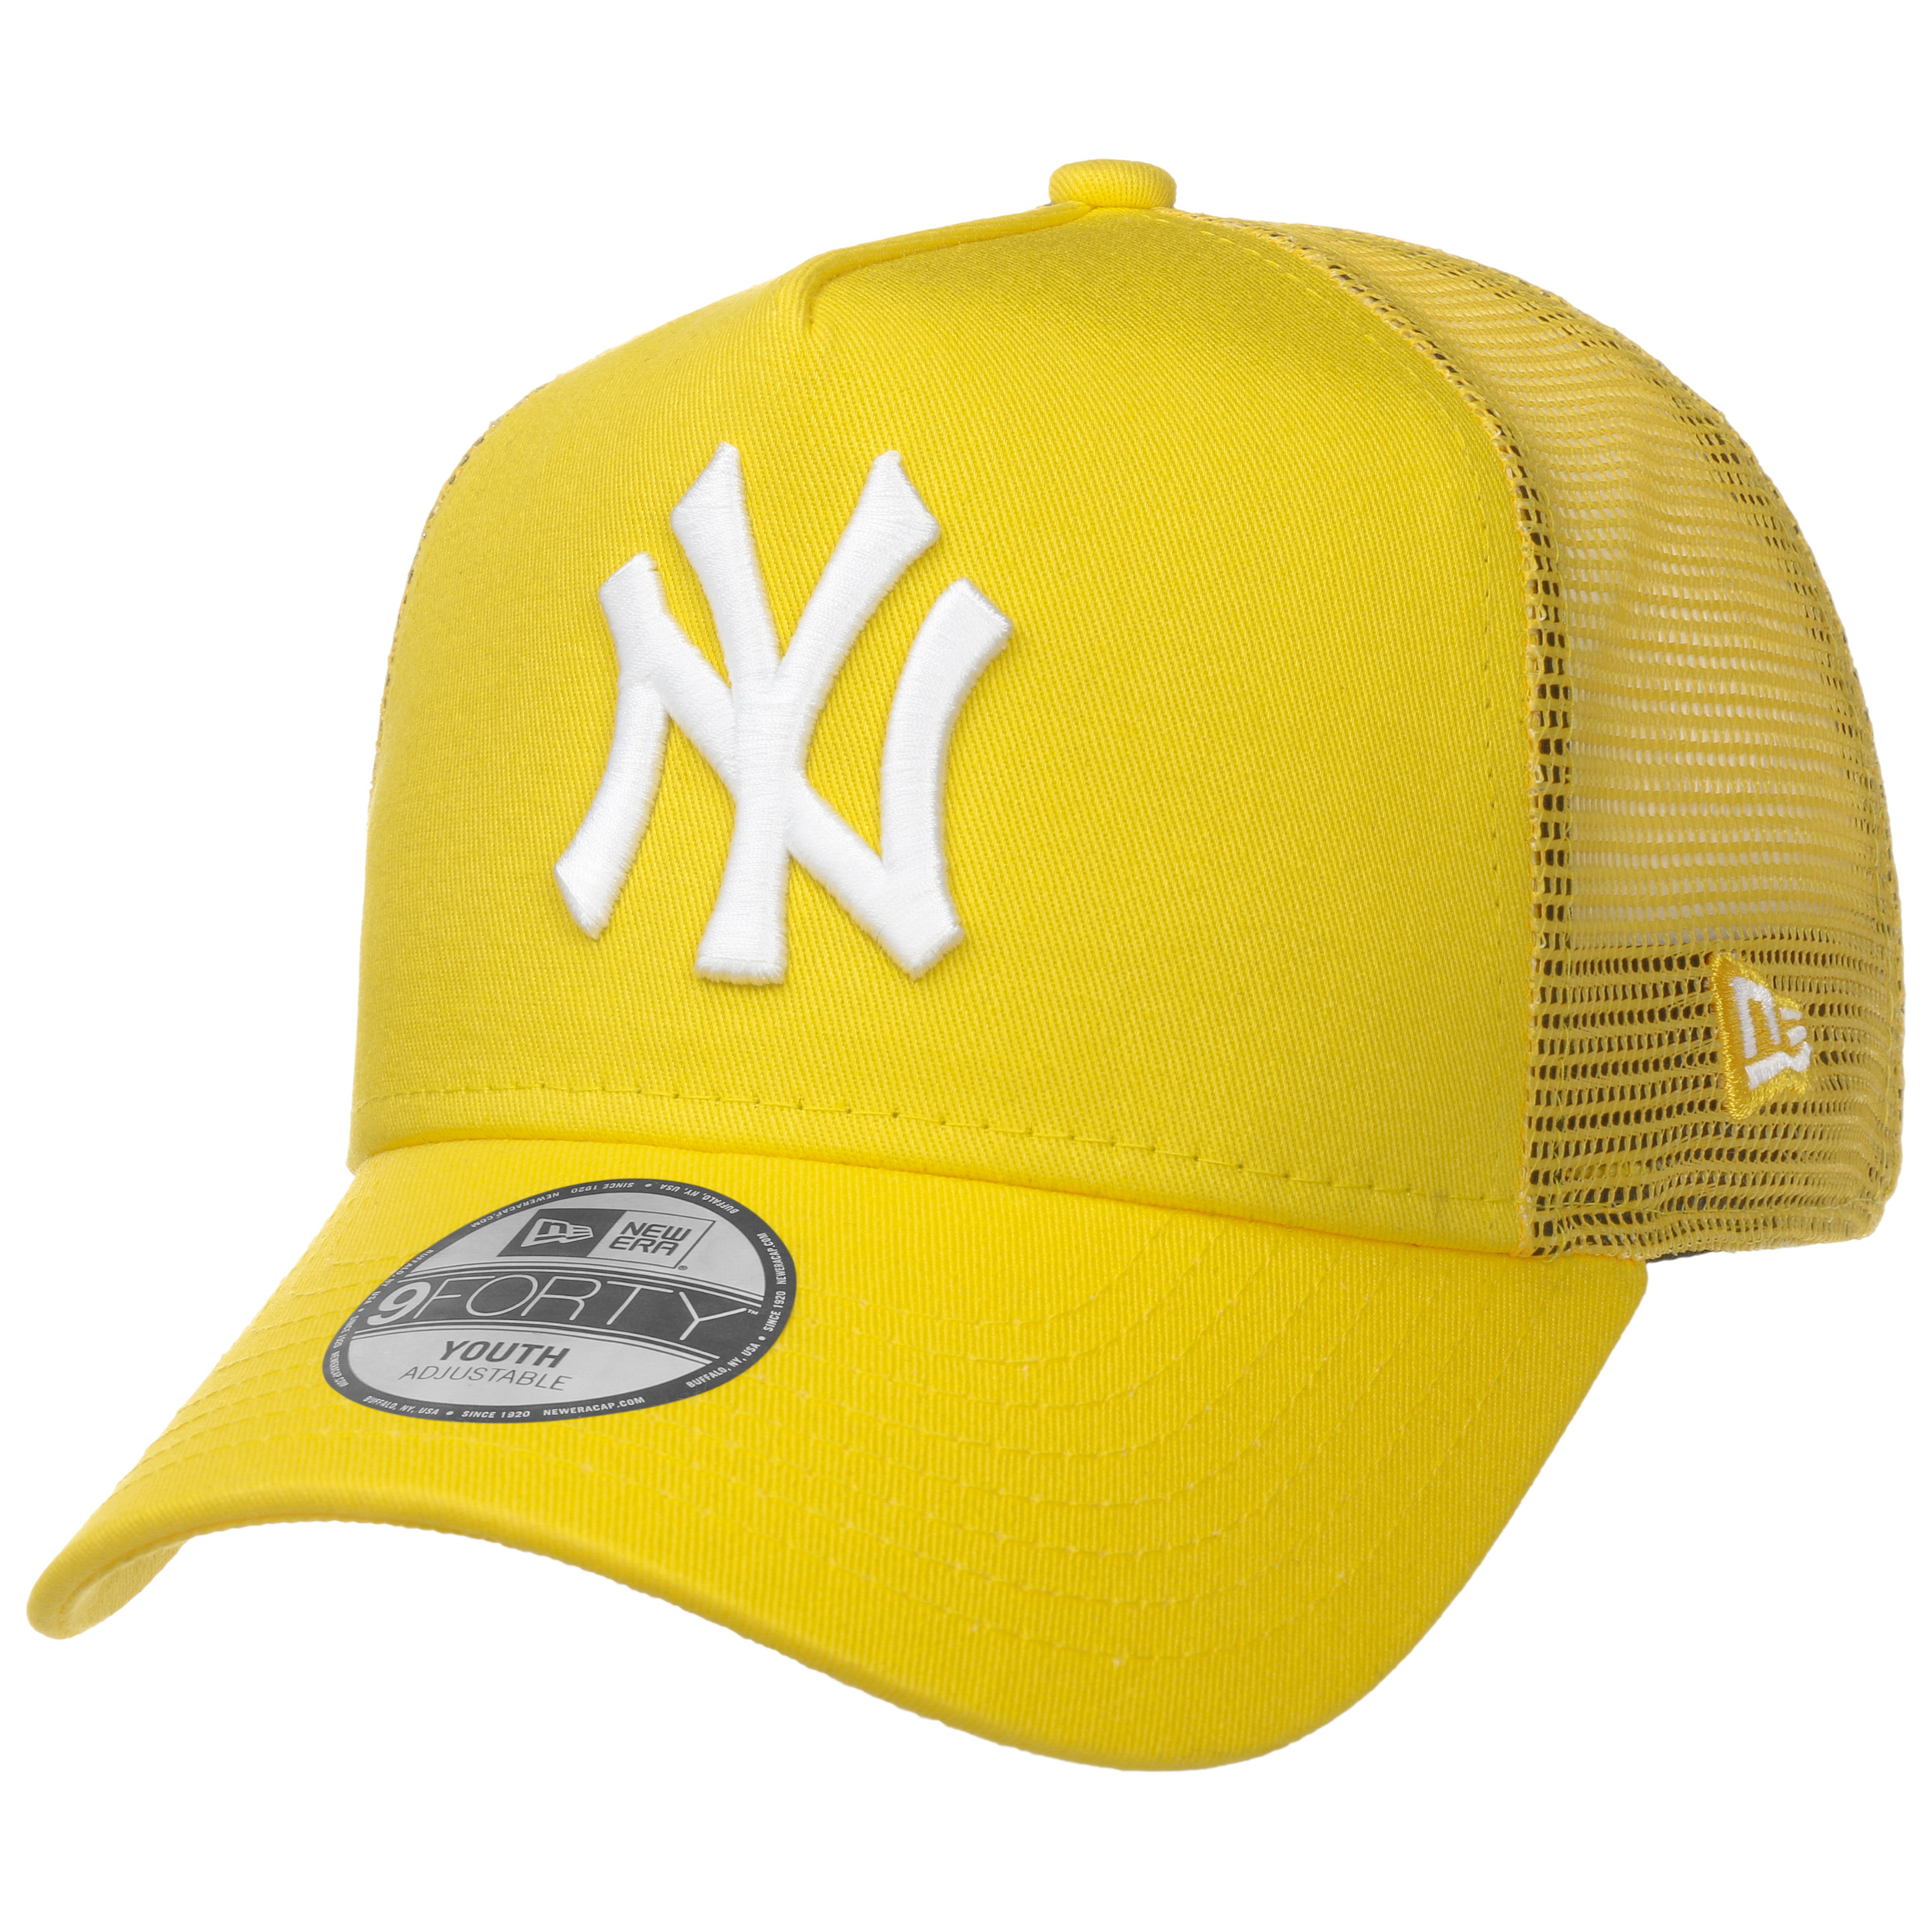 Youth Tonal Mesh Yankees Trucker Cap by New Era - 22,95 €